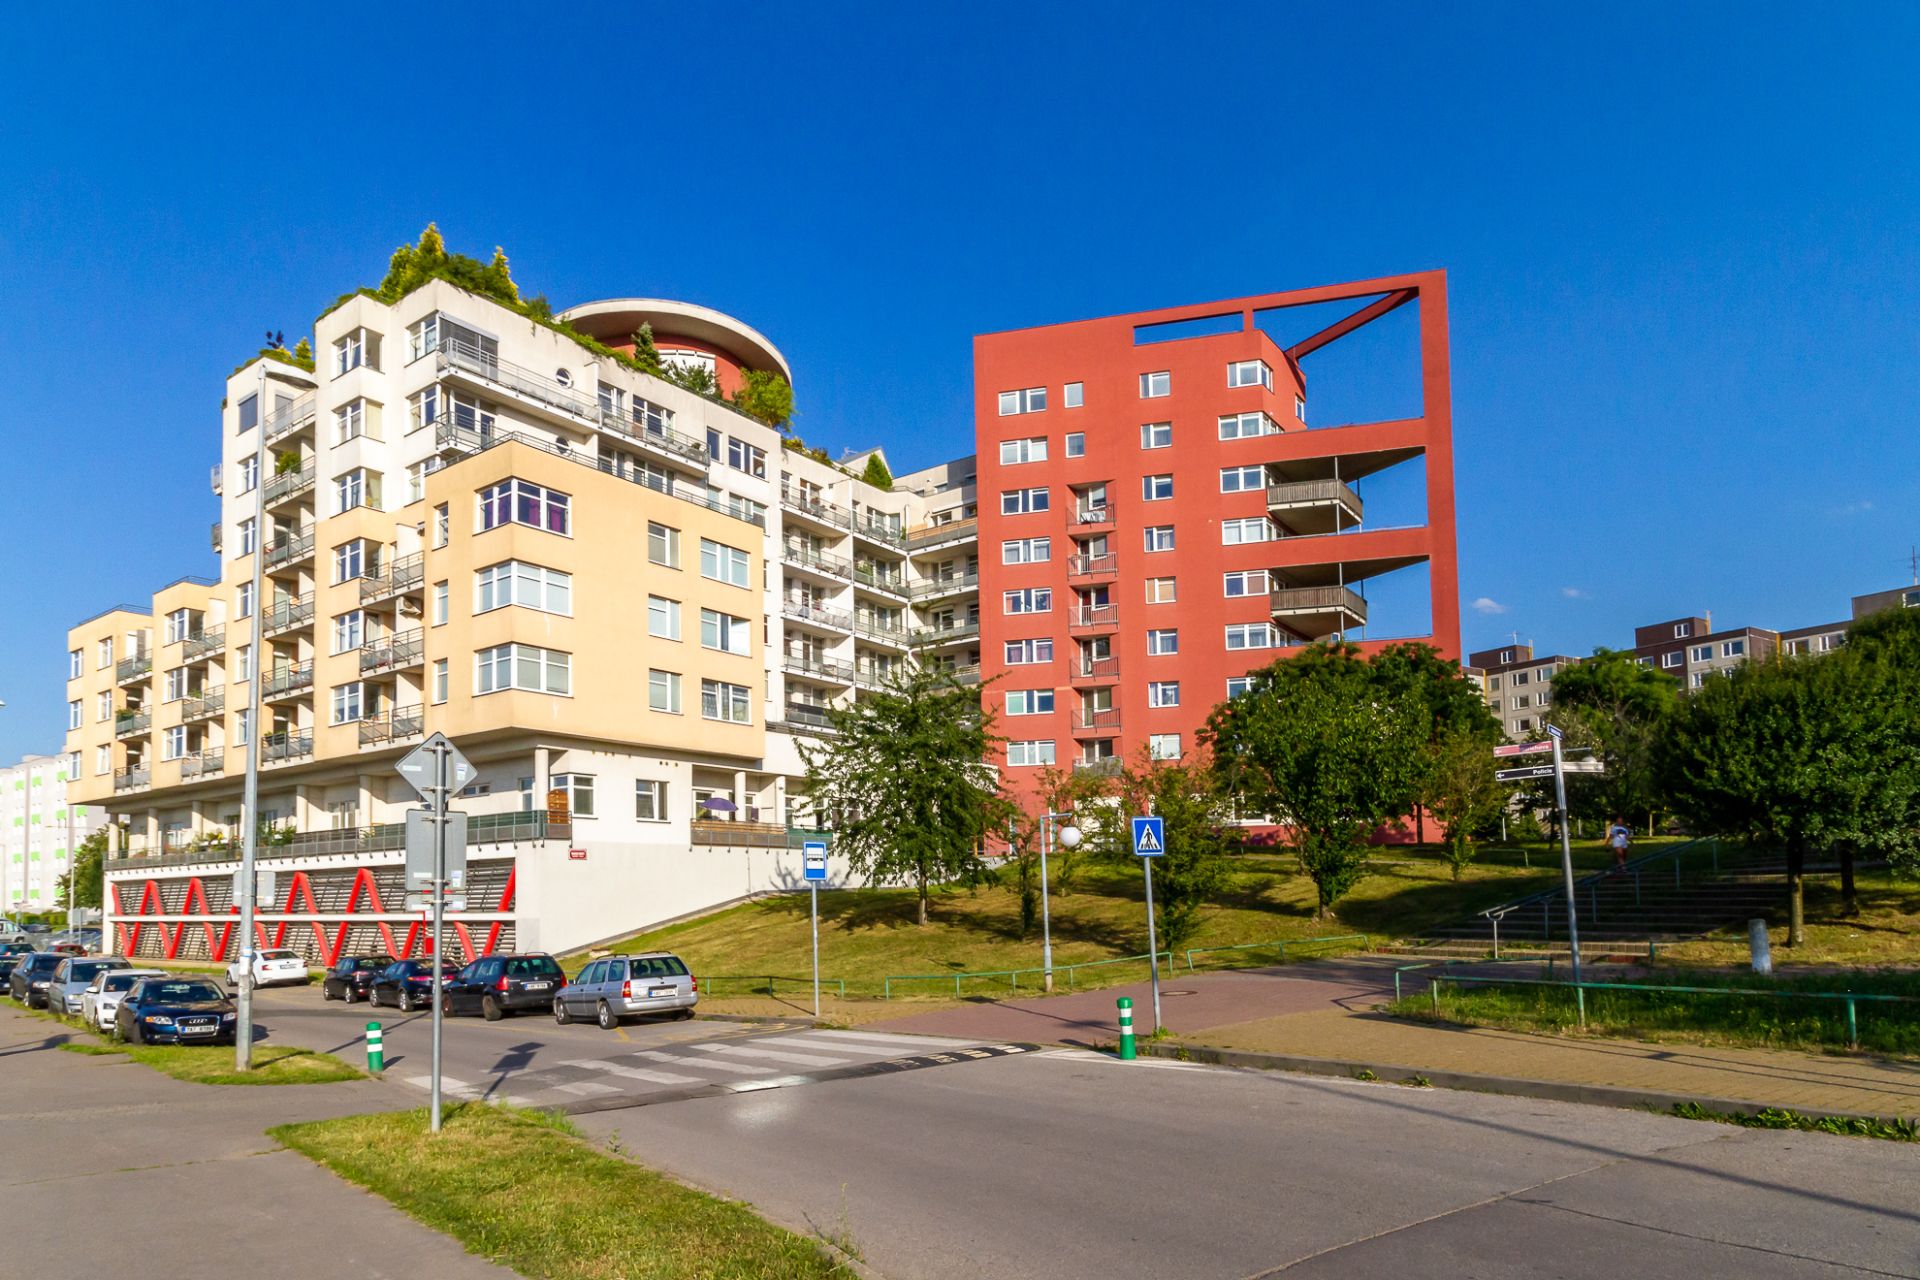 Rodinný byt 5+kk, 182 m2, 2 terasy, 2 garáže, Barrandov, Praha 5.